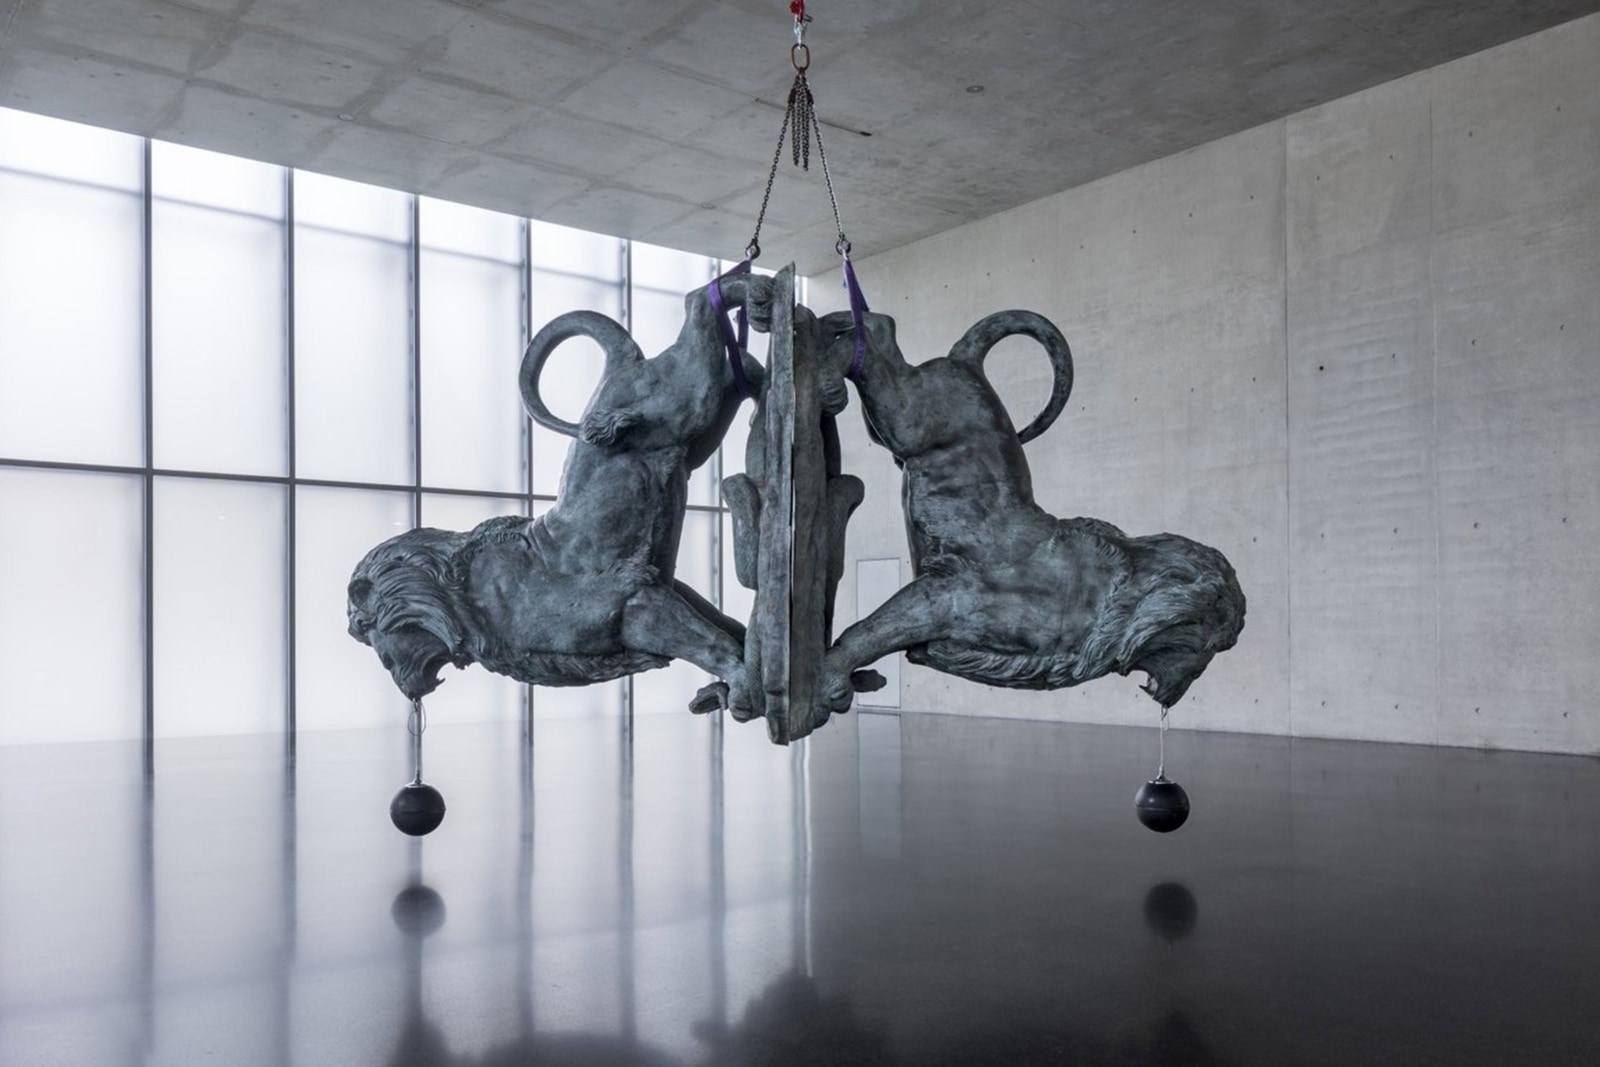 Installation view, Bellend bin ich aufgewacht, Kunsthaus Bregenz, Bregenz, 2019